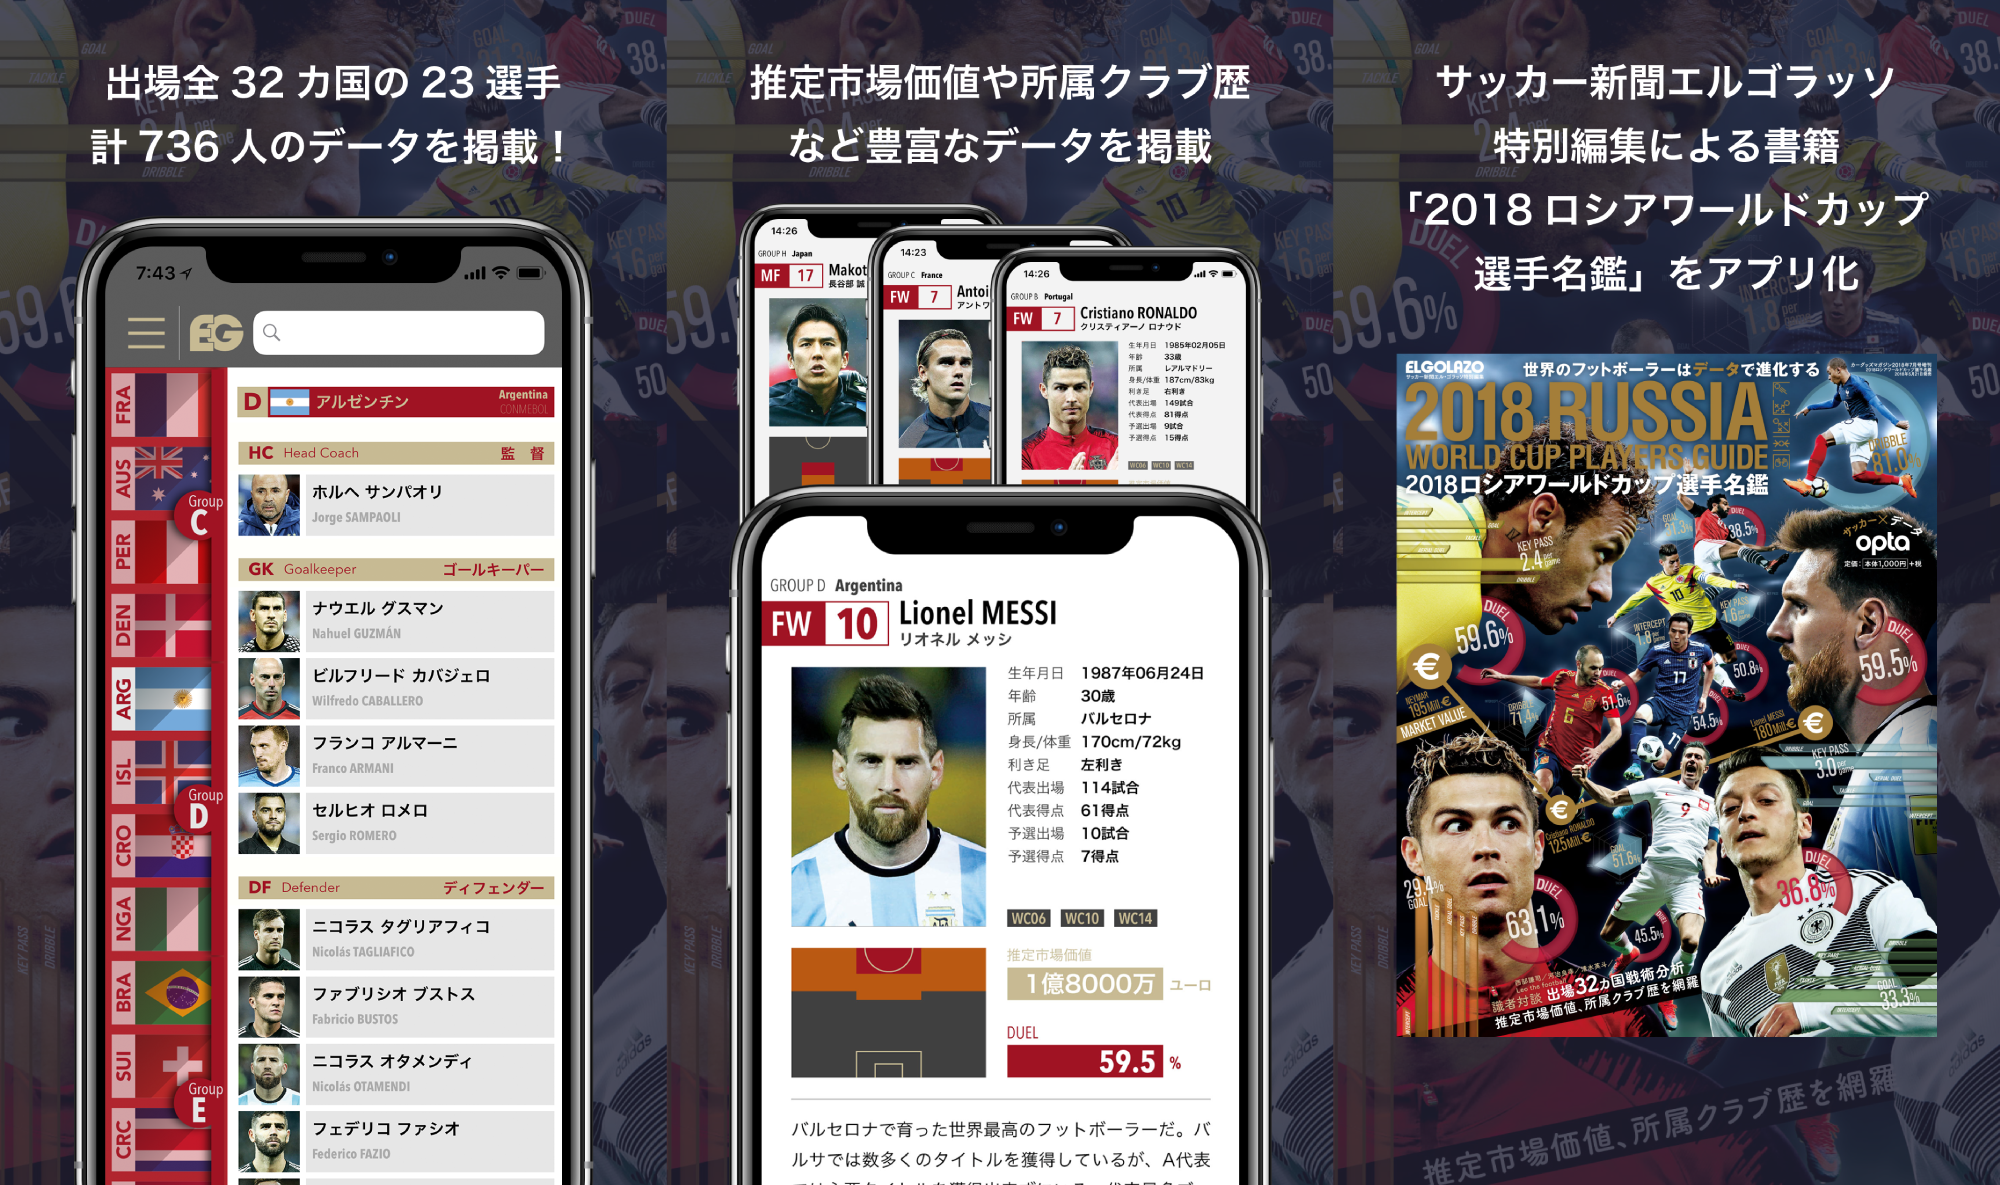 サッカー新聞エルゴラッソによる「2018 ロシアワー ルドカップ選手名鑑」がアプリになって登場!